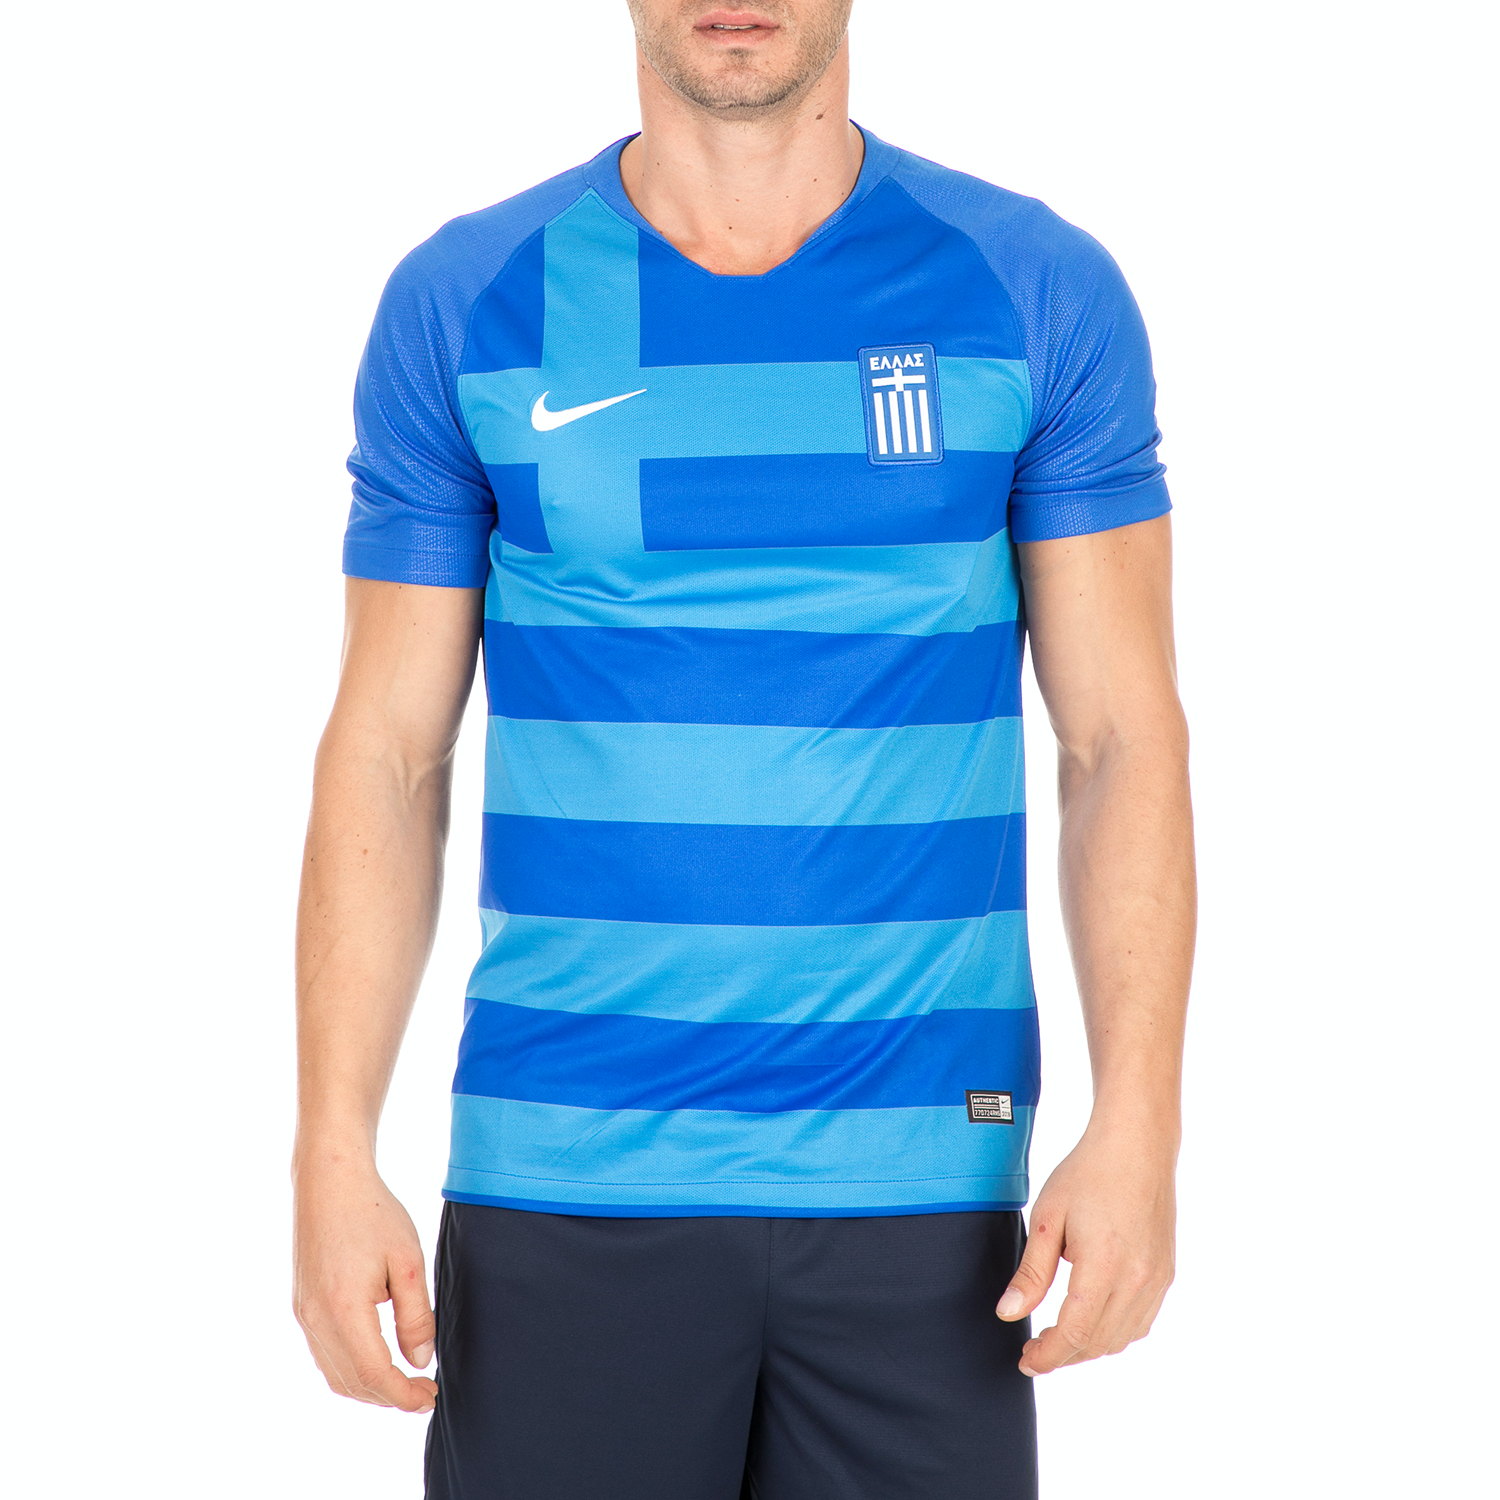 Ανδρικά/Ρούχα/Αθλητικά/T-shirt NIKE - Ανδρική ποδοσφαιρική φανέλα NIKE GRE M NK BRT STAD JSY μπλε